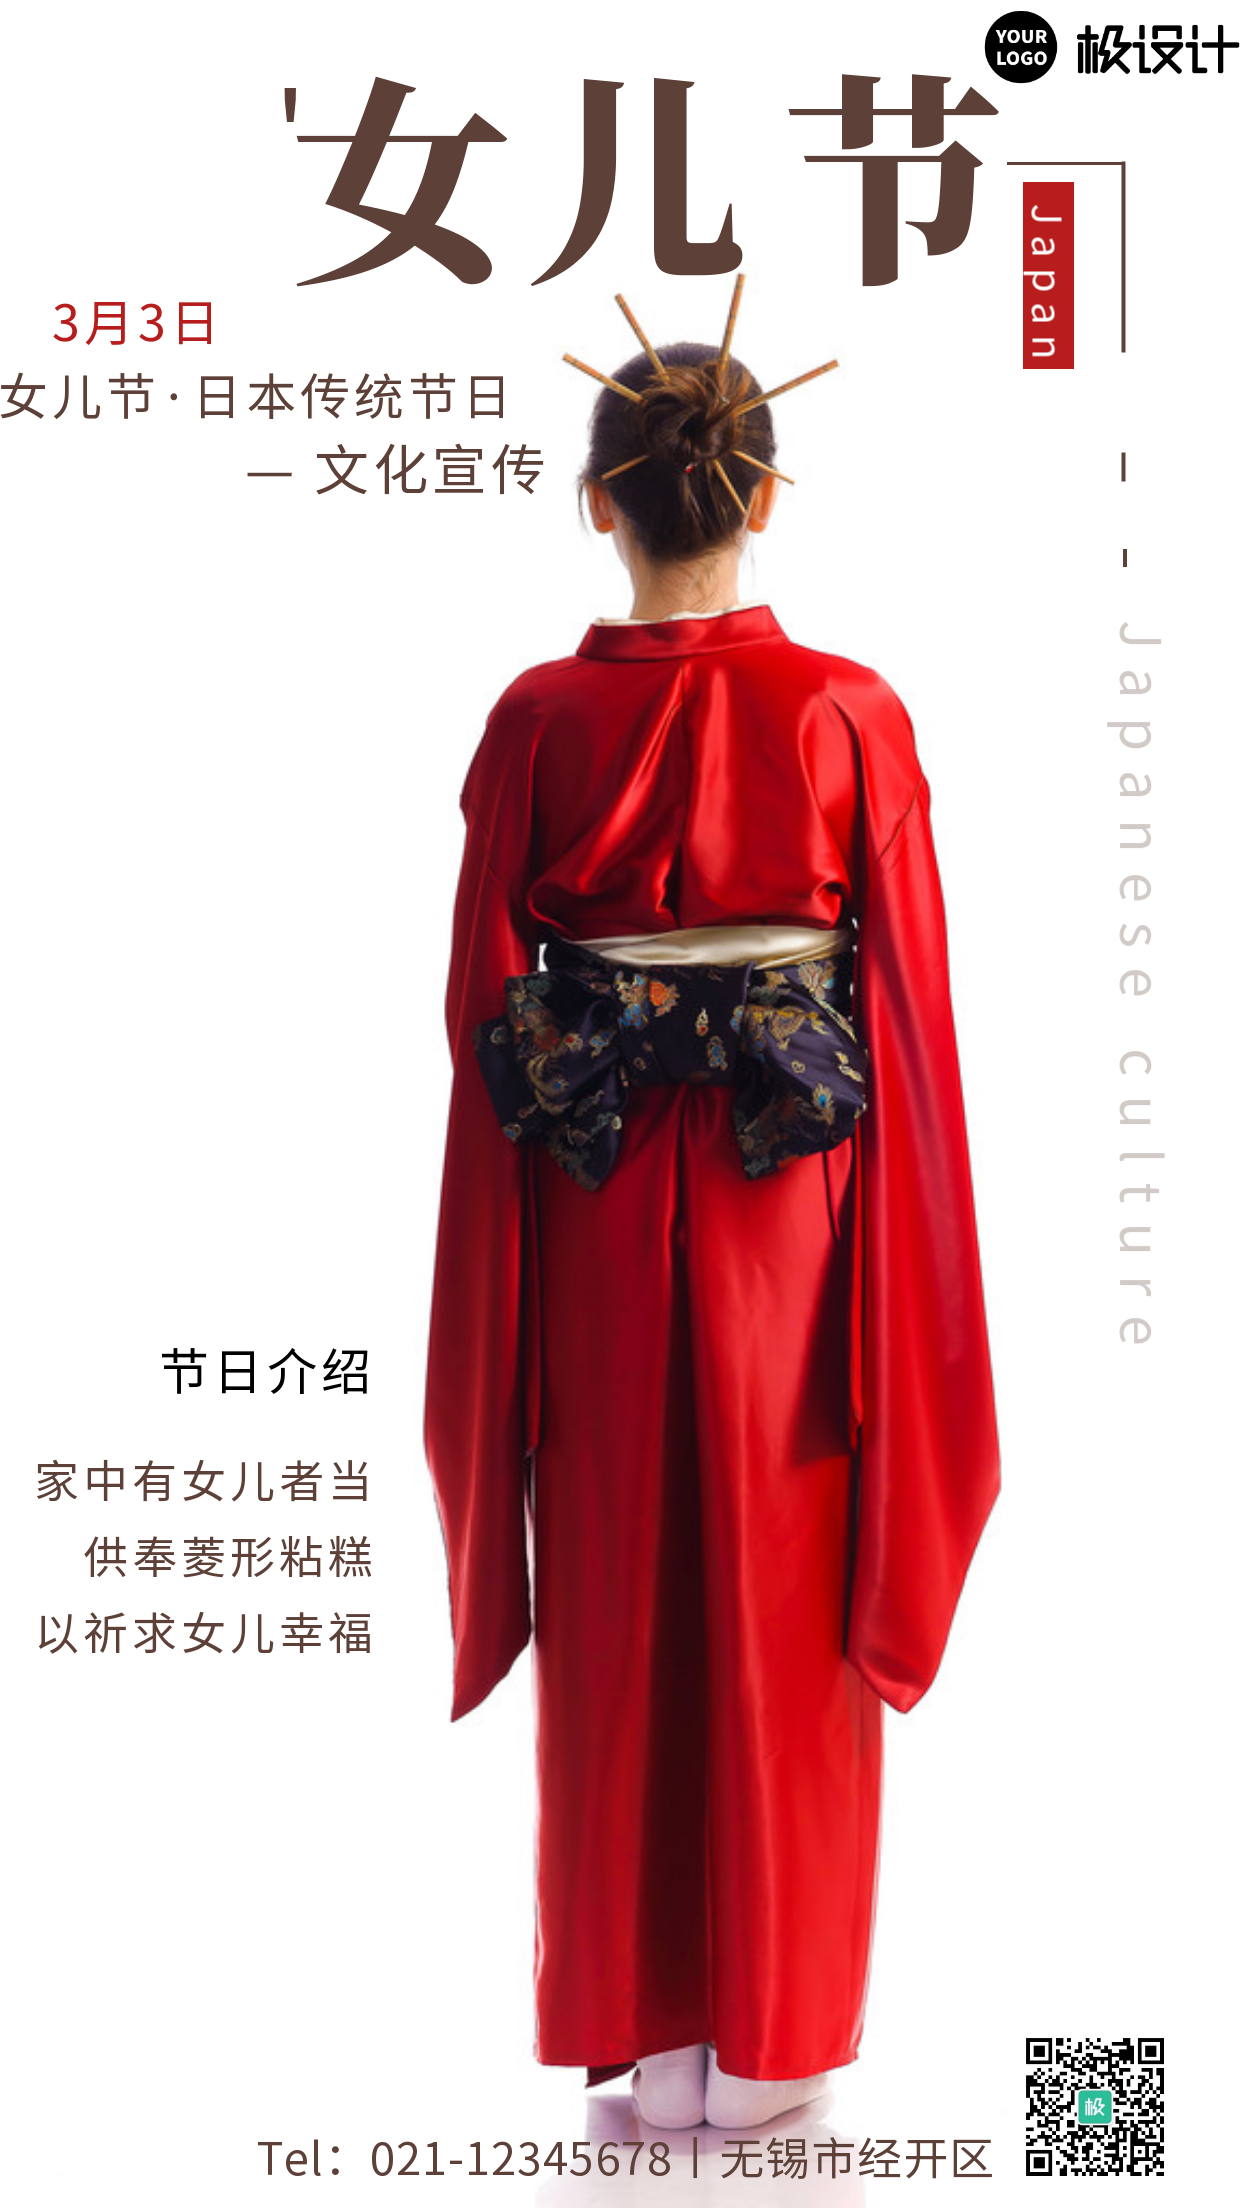 借3月3日日本女儿节宣传日本文化手机海报